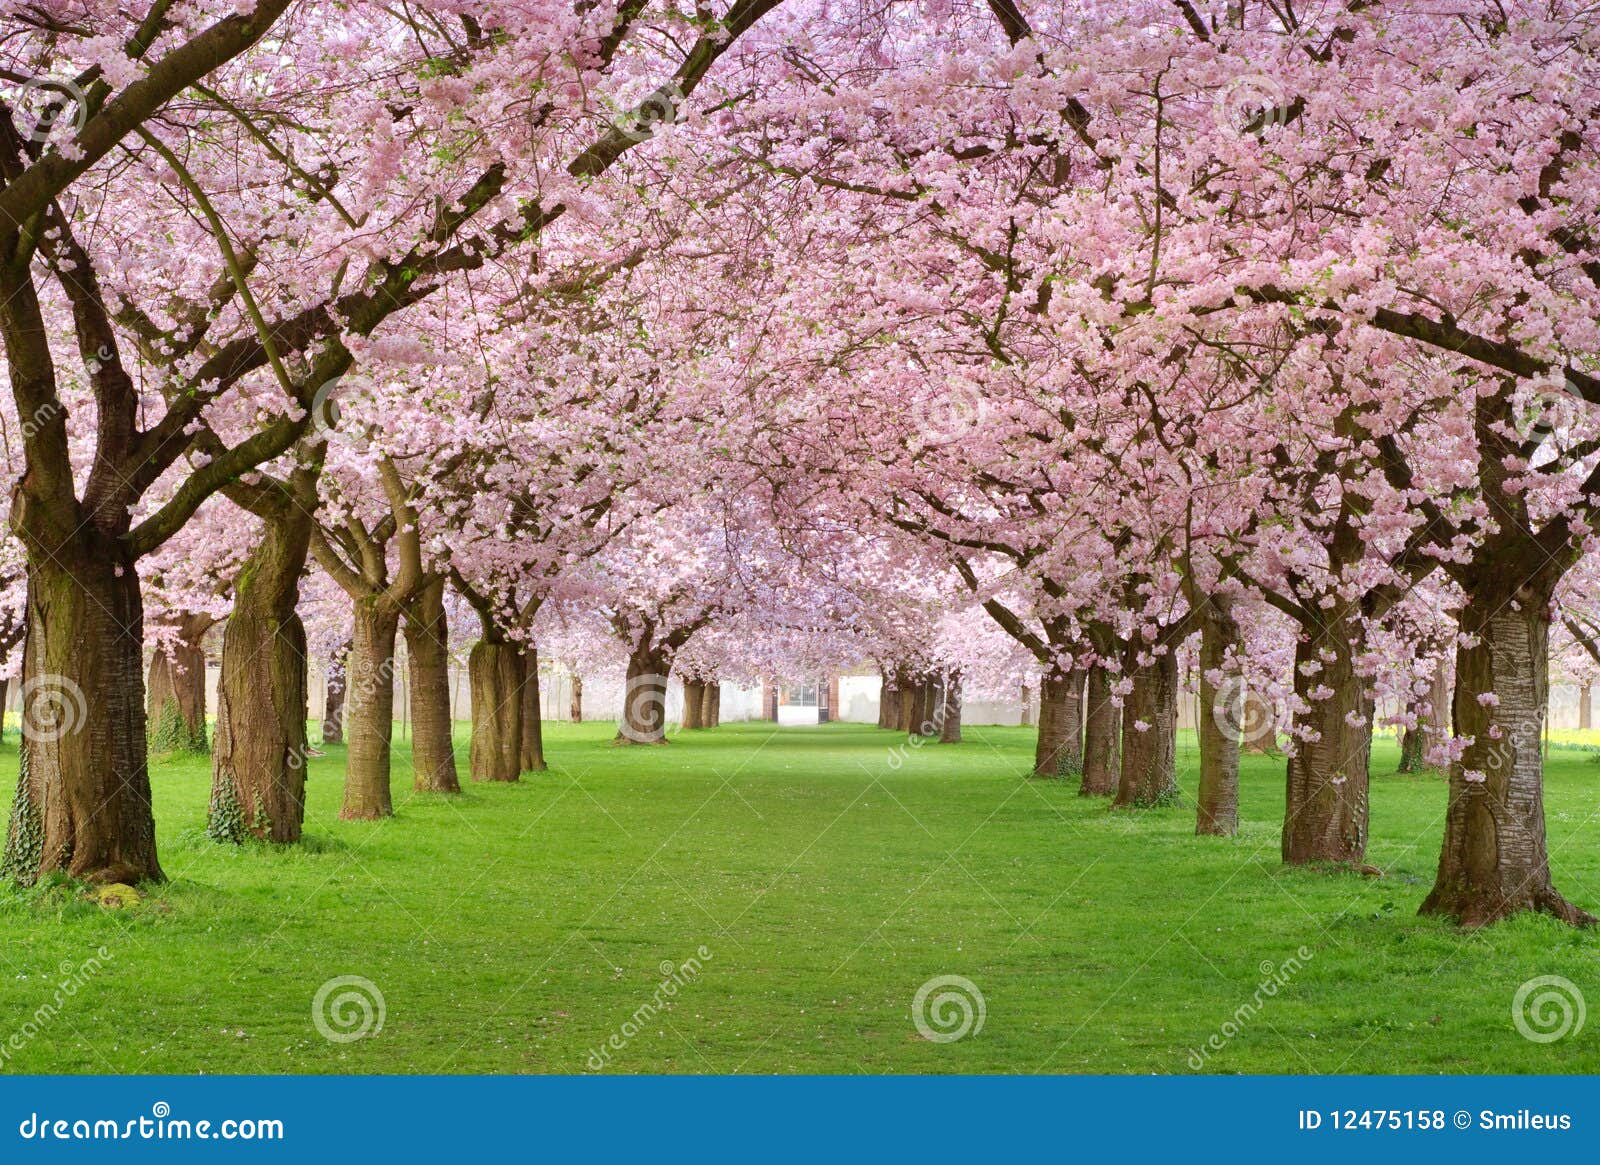 cherry blossoms plenitude